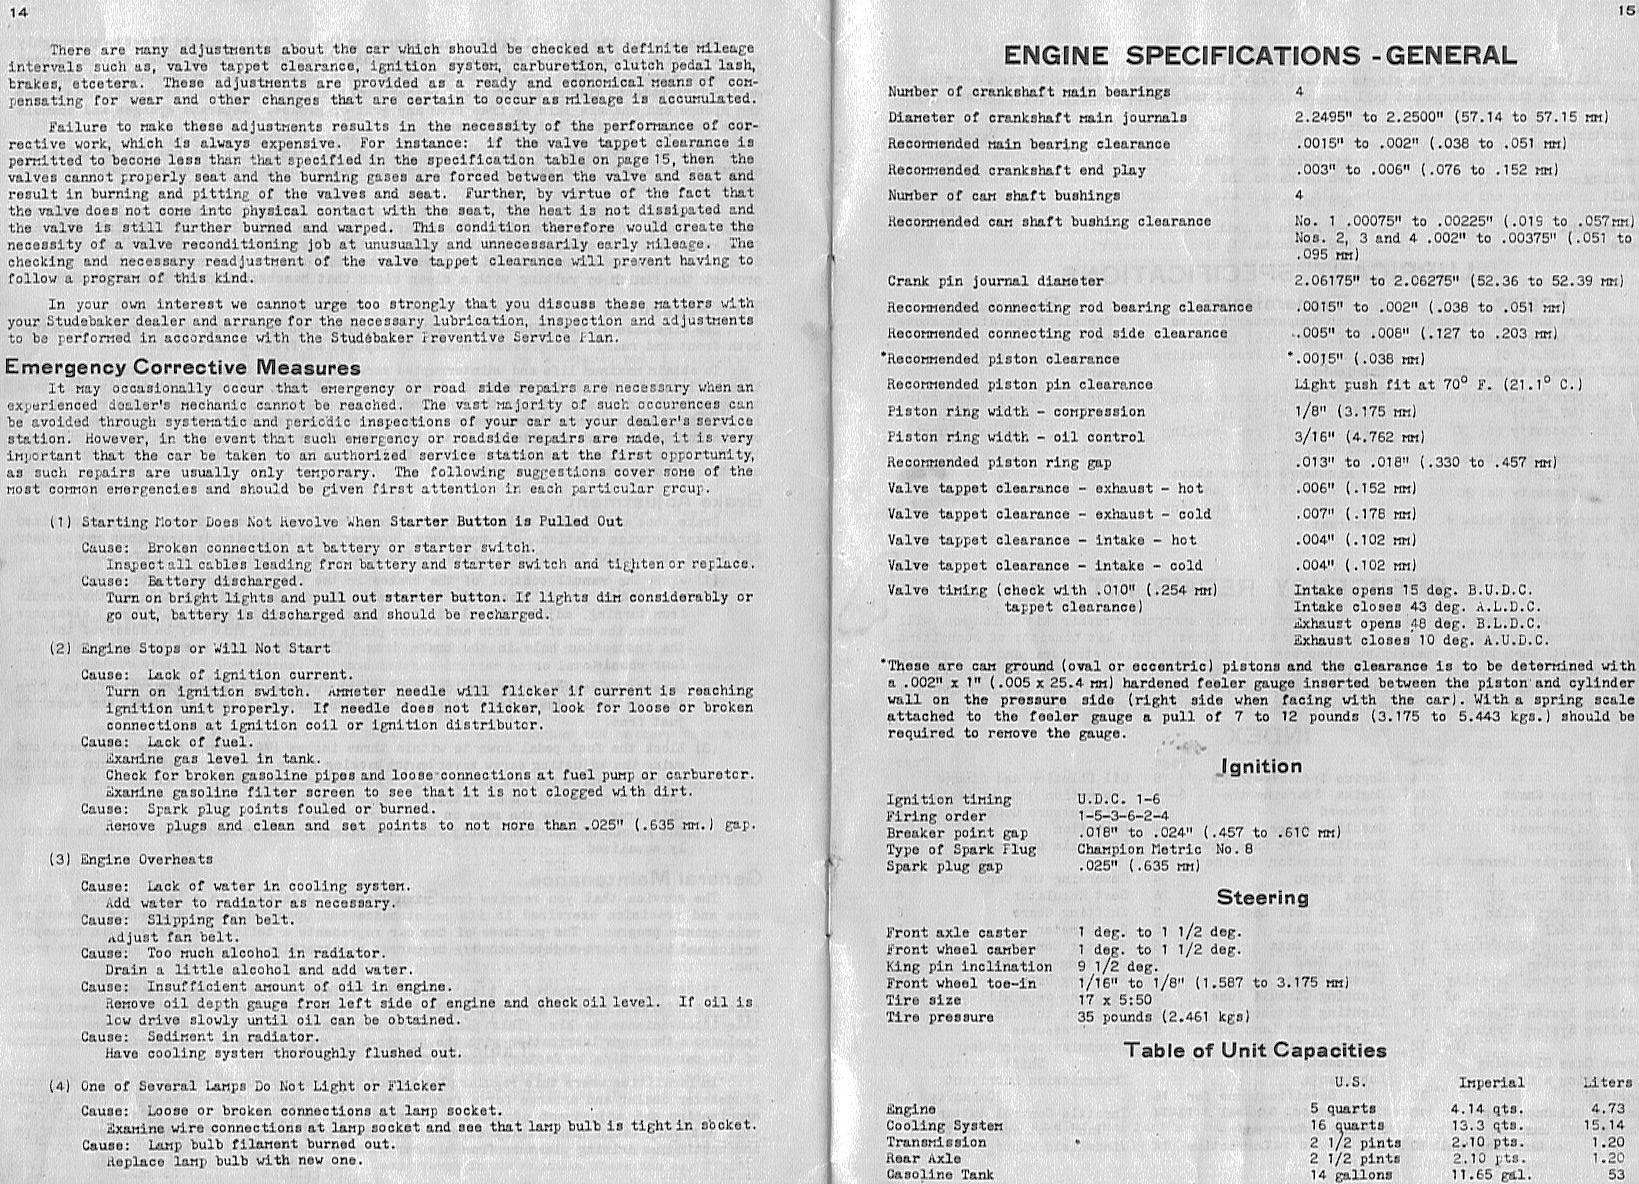 1934 Studebaker Dictator Manual-14-15